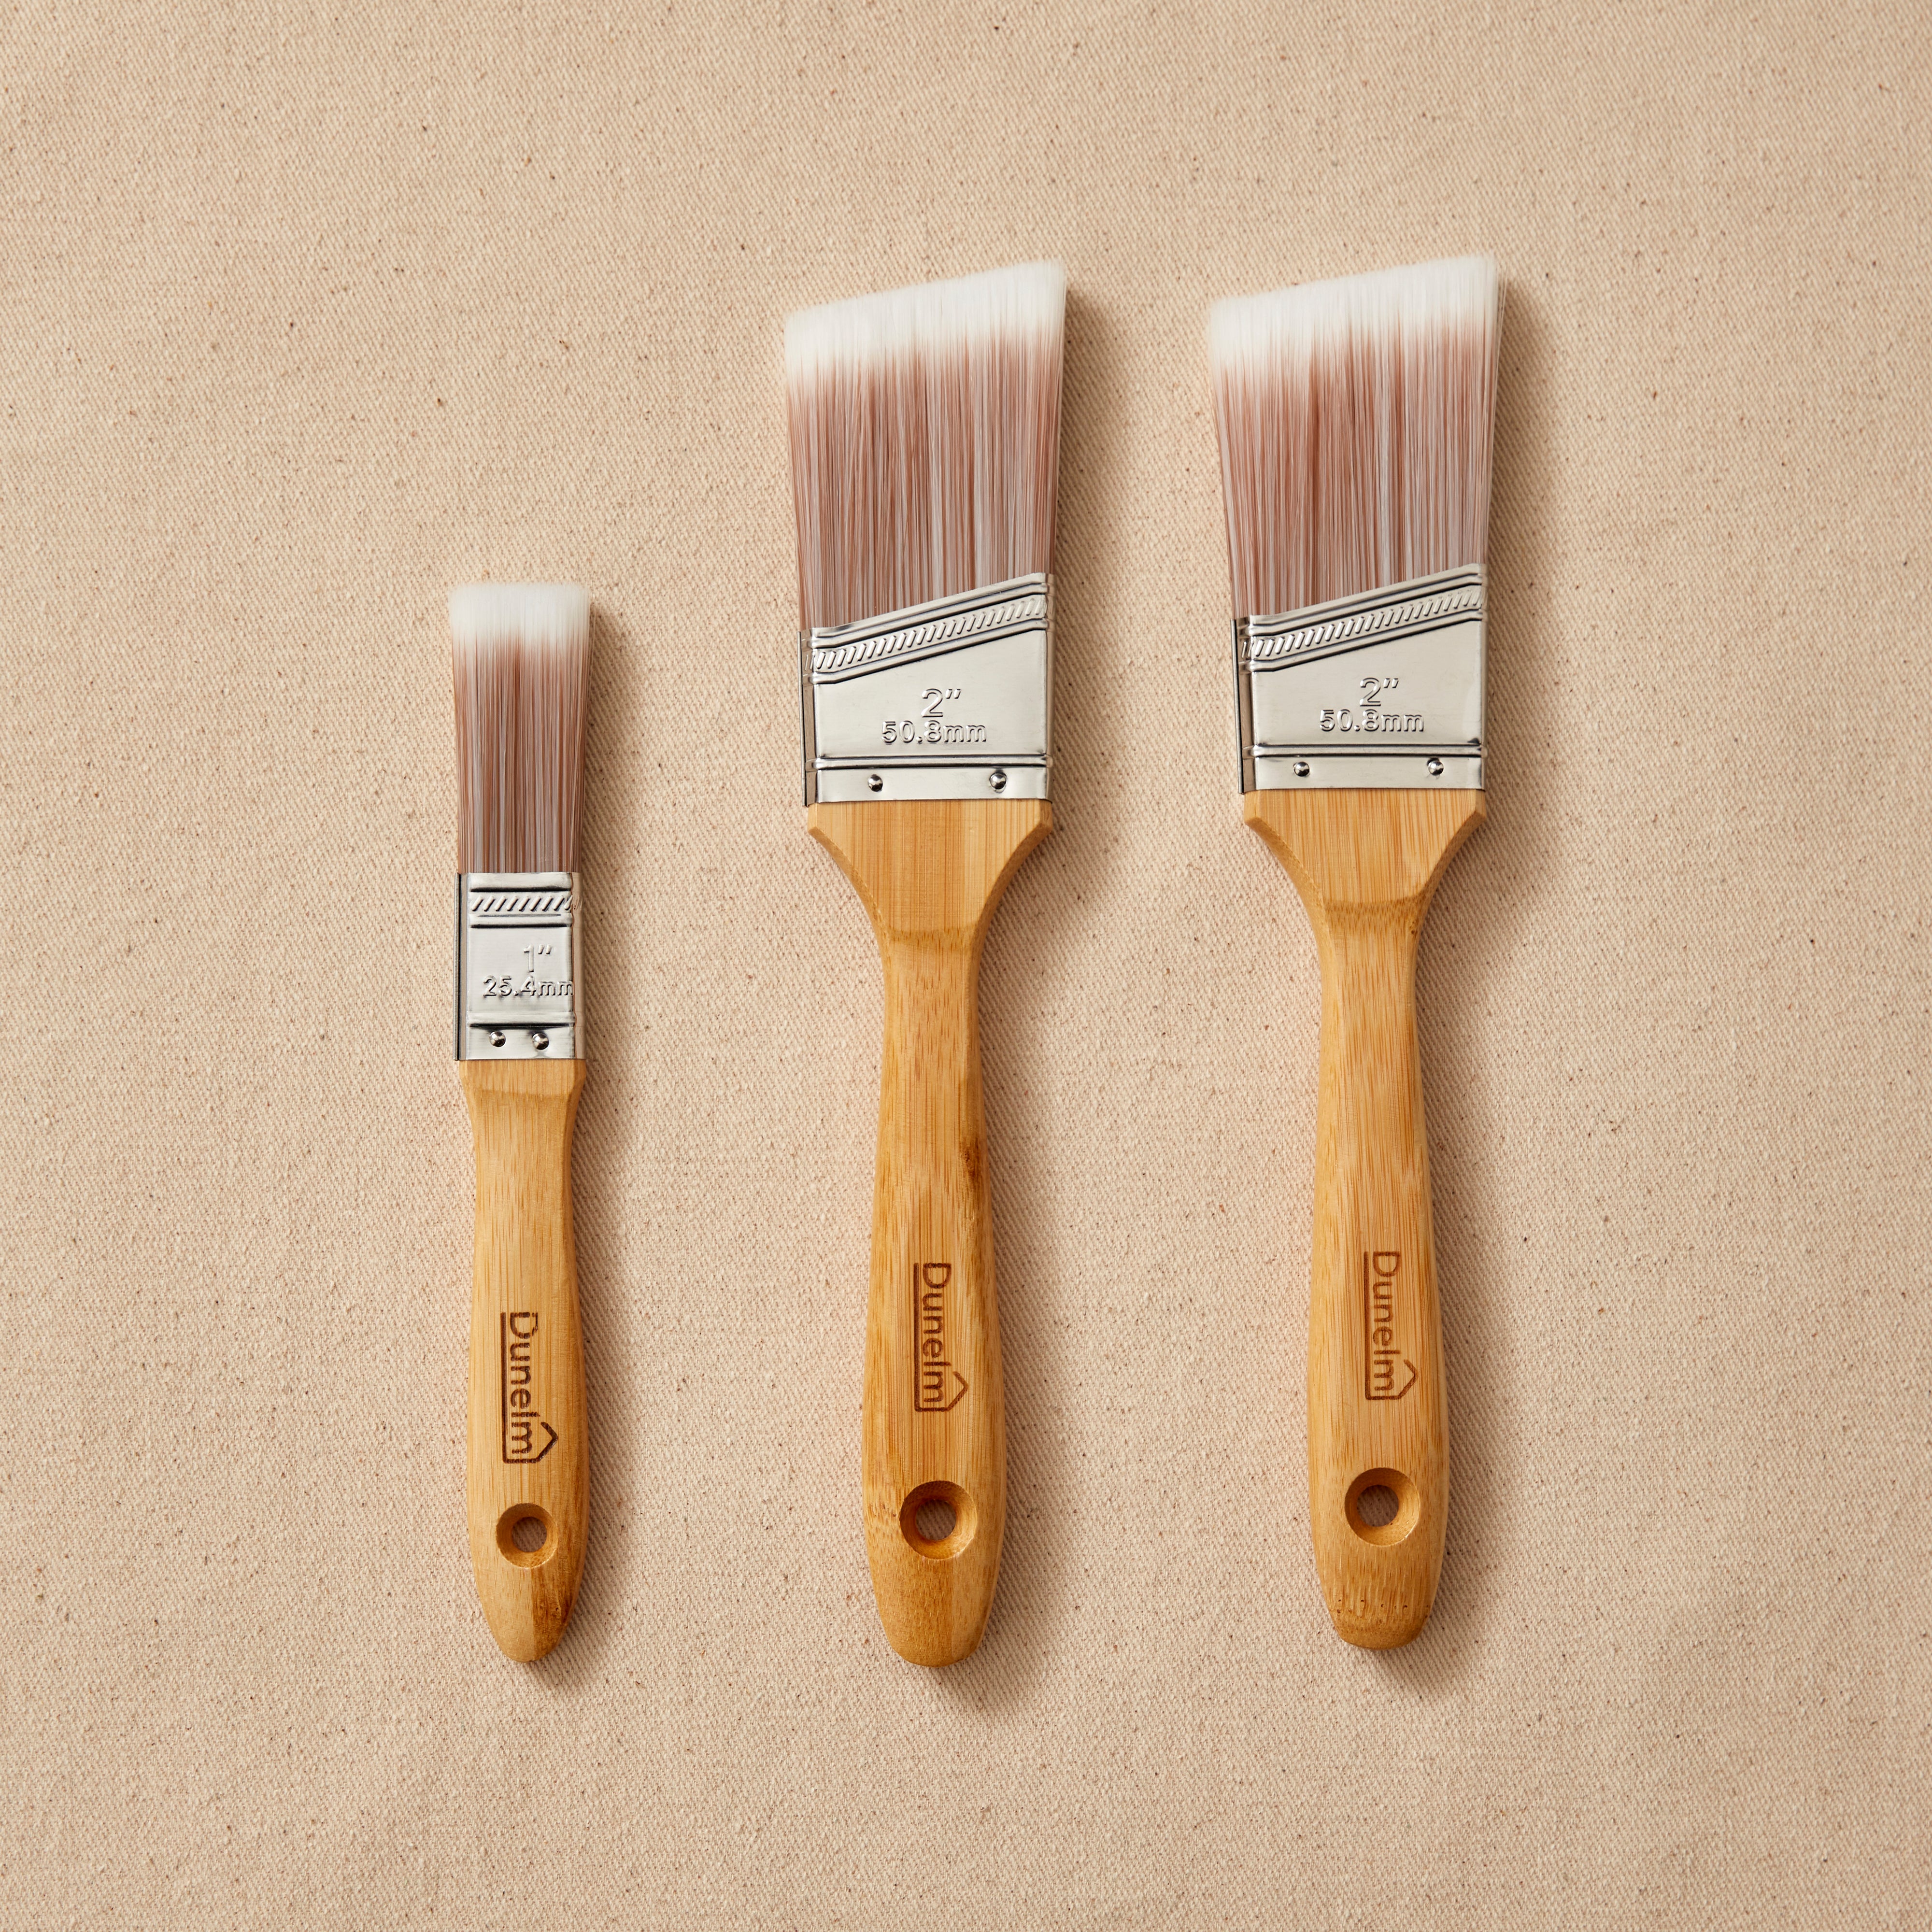 3 pieces plastic handle paint brush